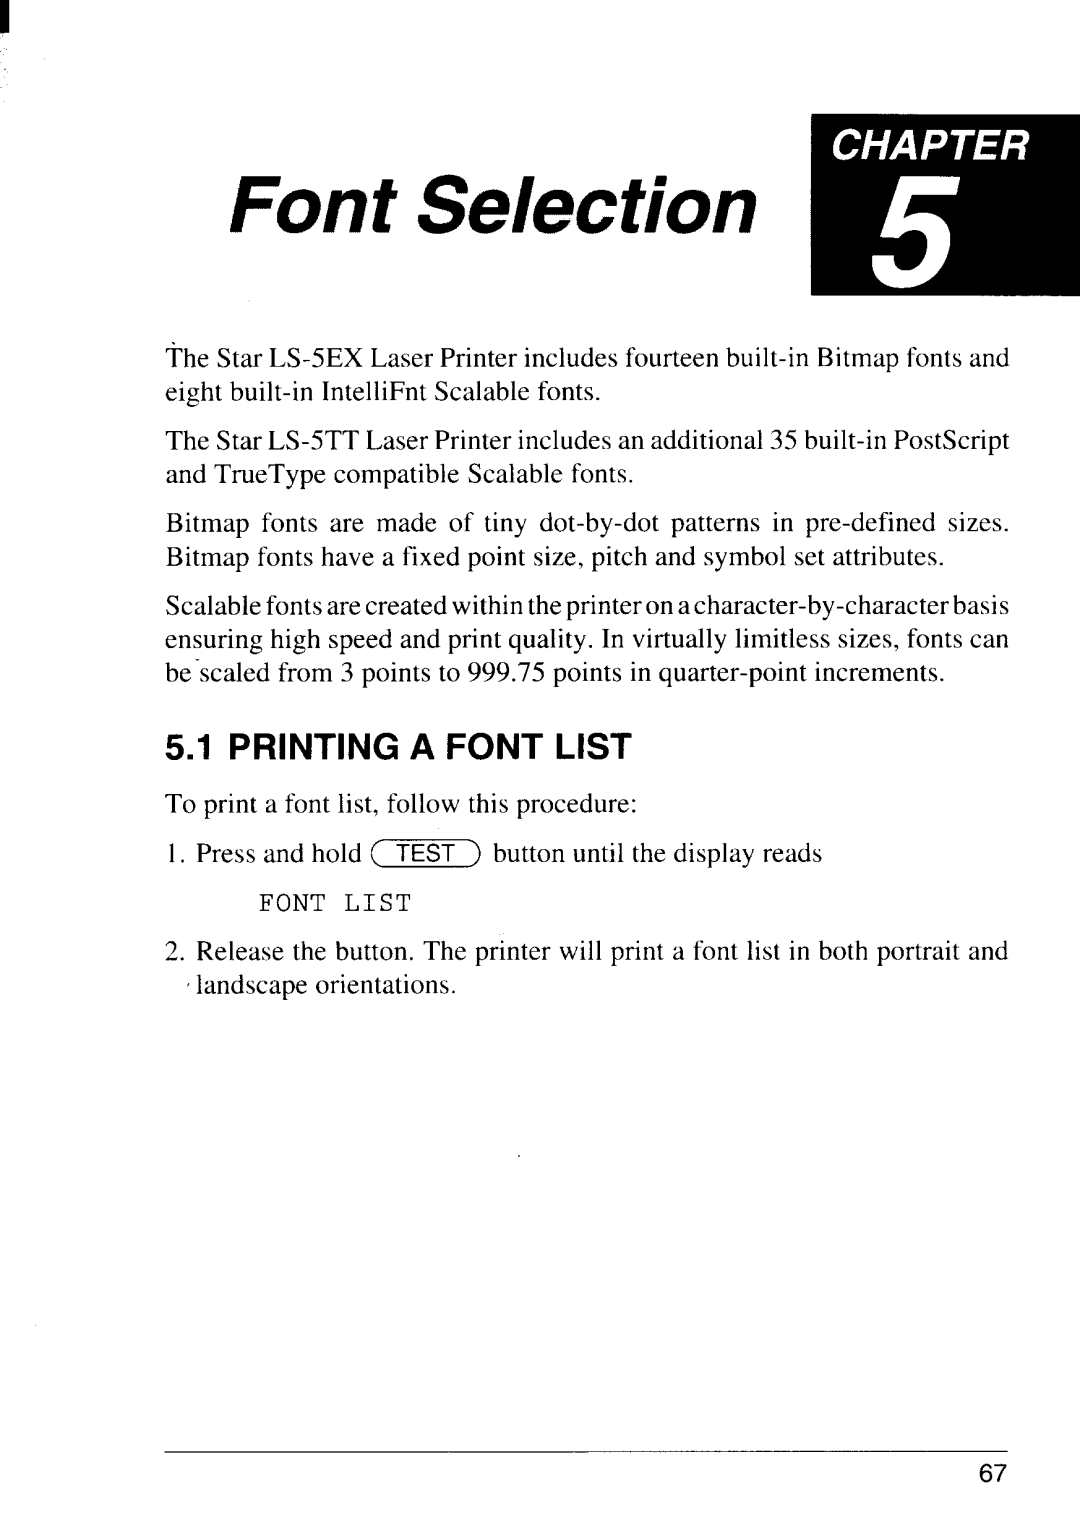 Star Micronics LS-5 TT, LS-5 EX operation manual Printing A Font List 